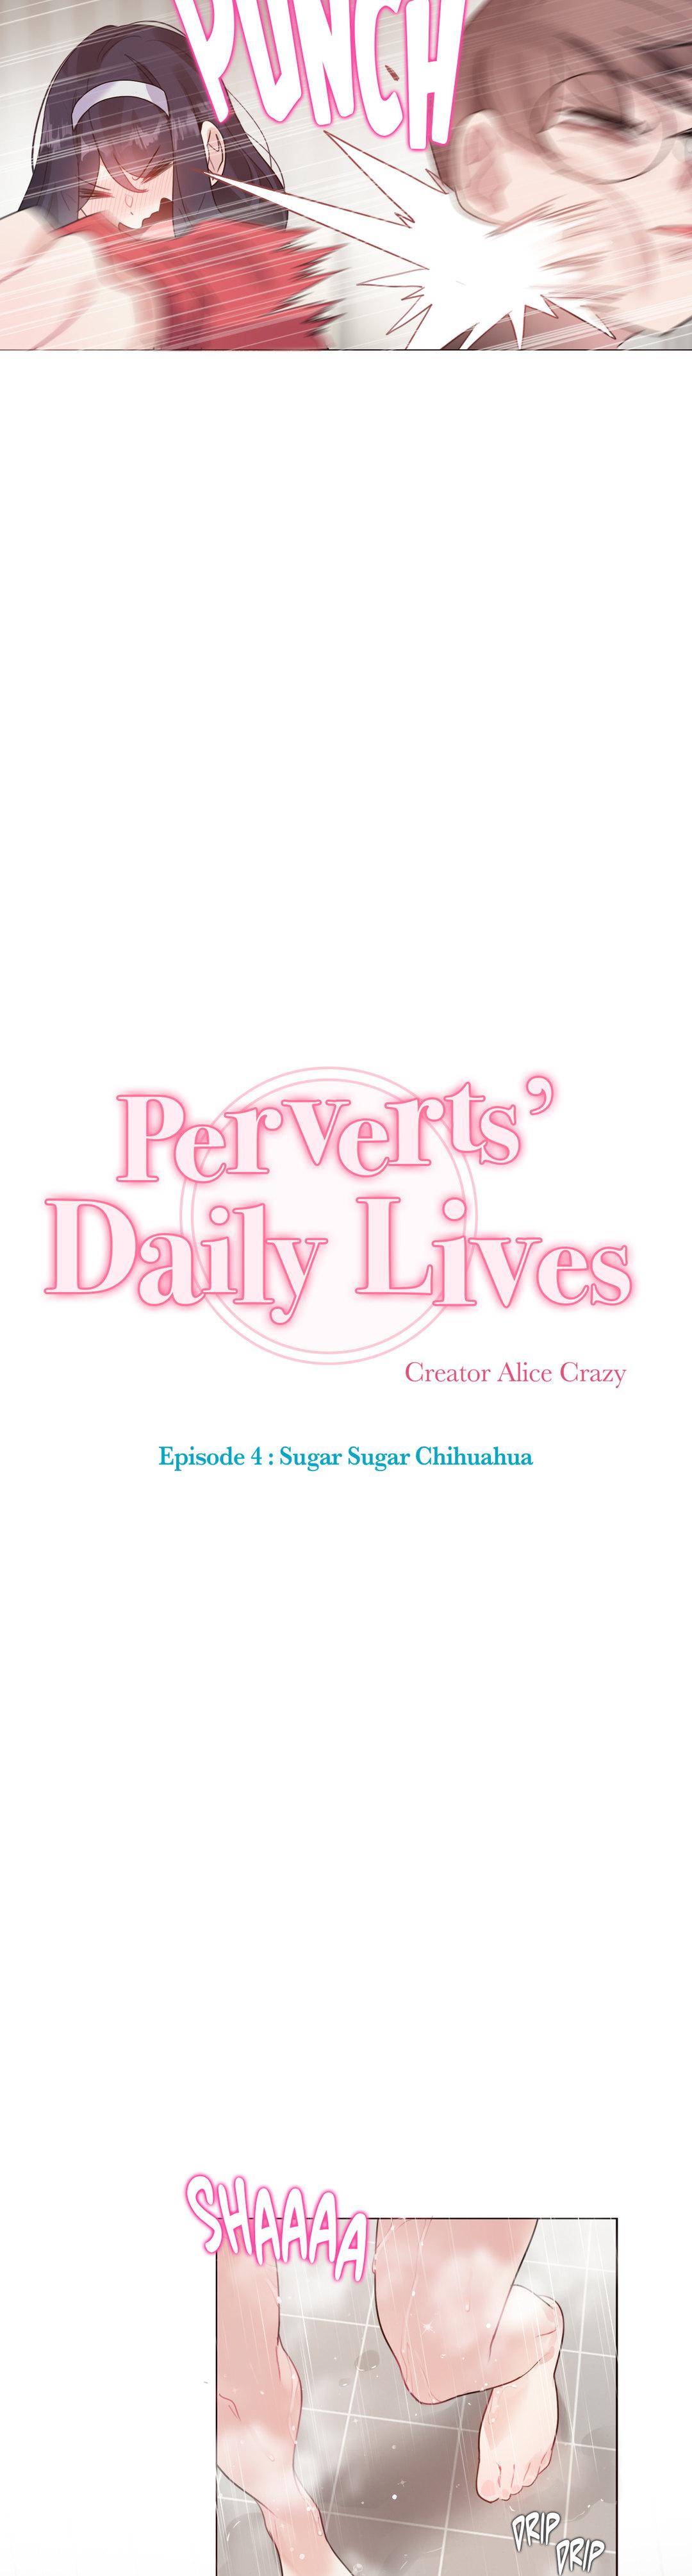 Perverts' Daily Lives Episode 4: Sugar Sugar Chihuahua 149